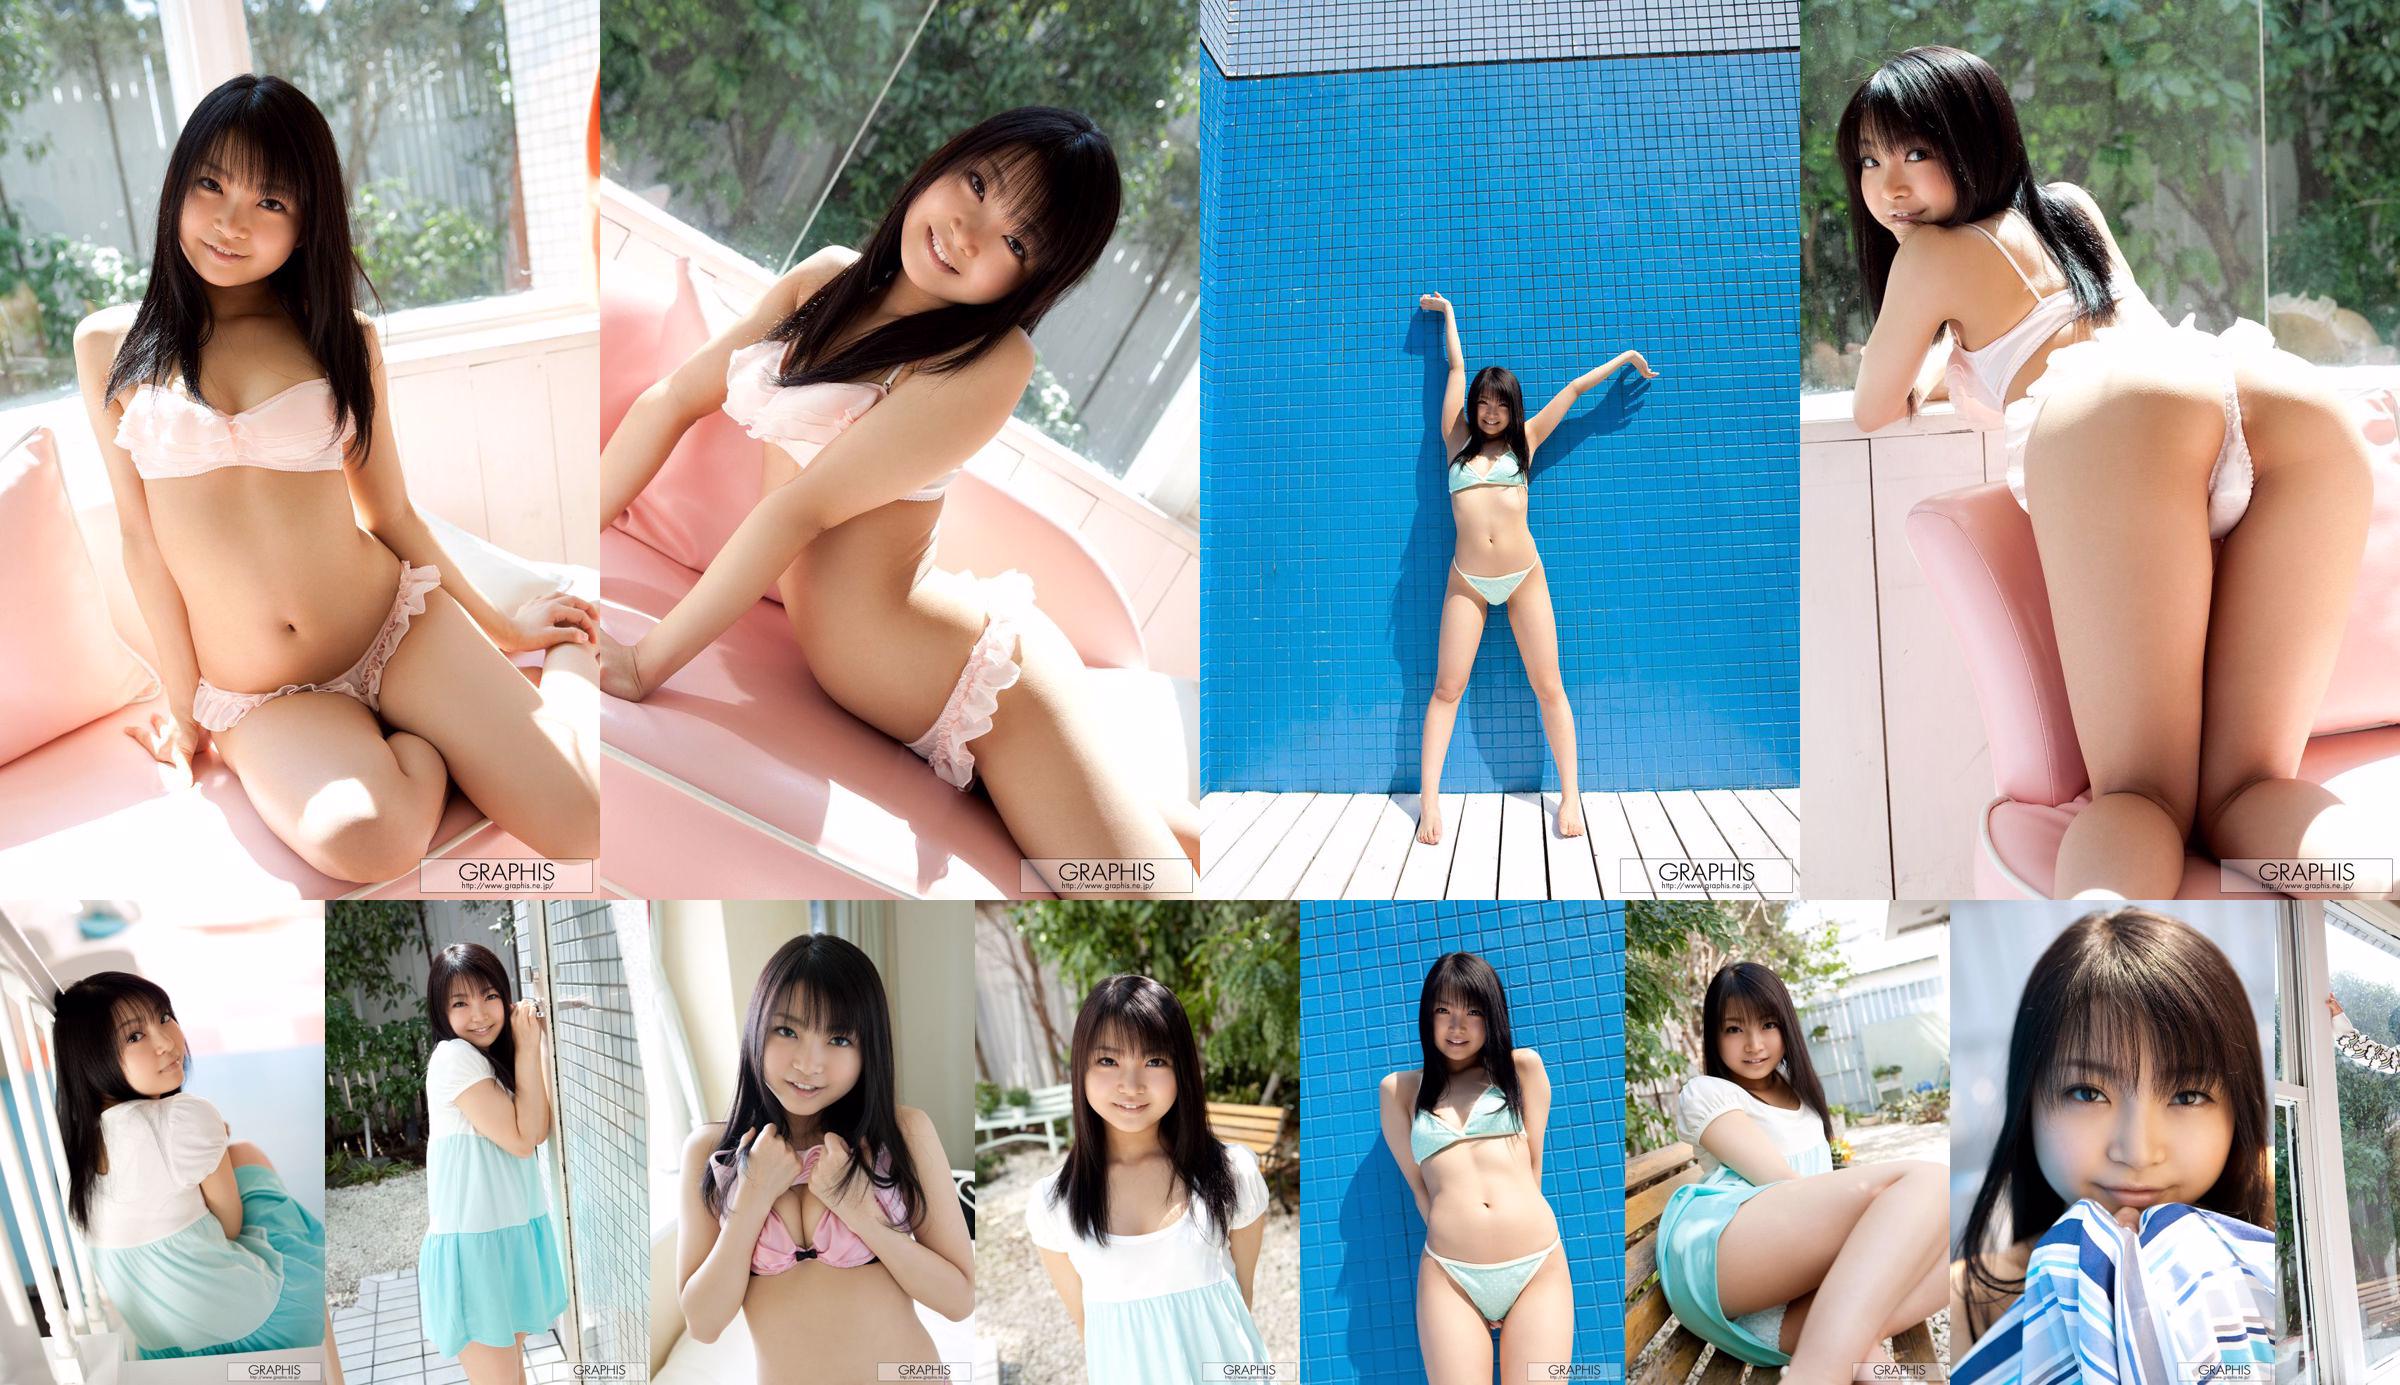 Chihiro Aoi / Chihiro Aoi [Graphis] Primera fotograbado Primera hija No.dc9151 Página 1